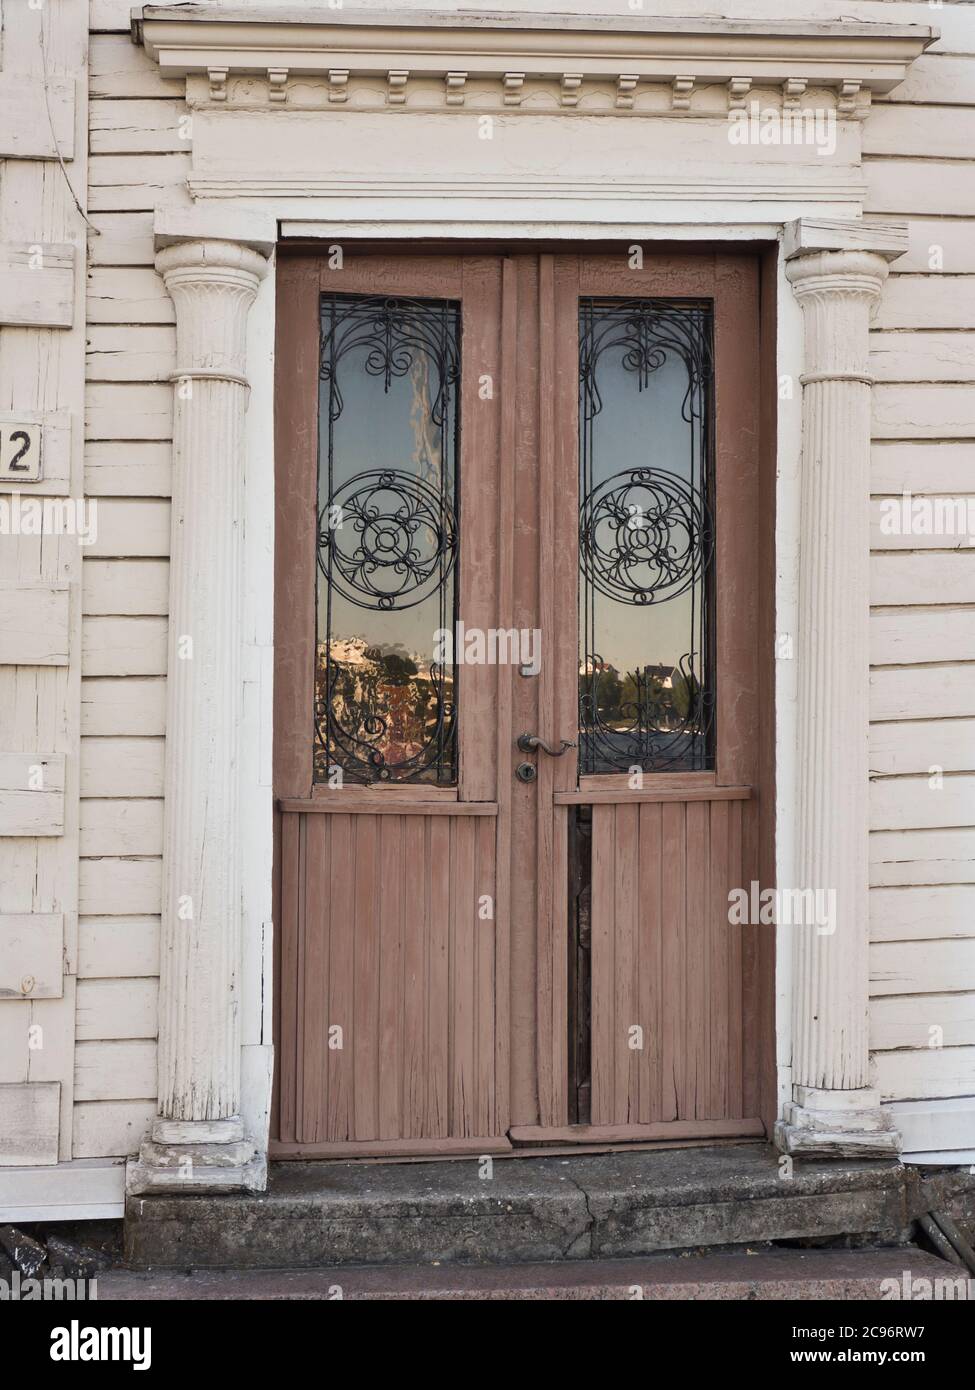 Dettaglio dell'edificio, vecchia porta marrone con decorazioni in stile art nouveau e colonne, numero 2, nel porto di Arendal Norvegia Foto Stock